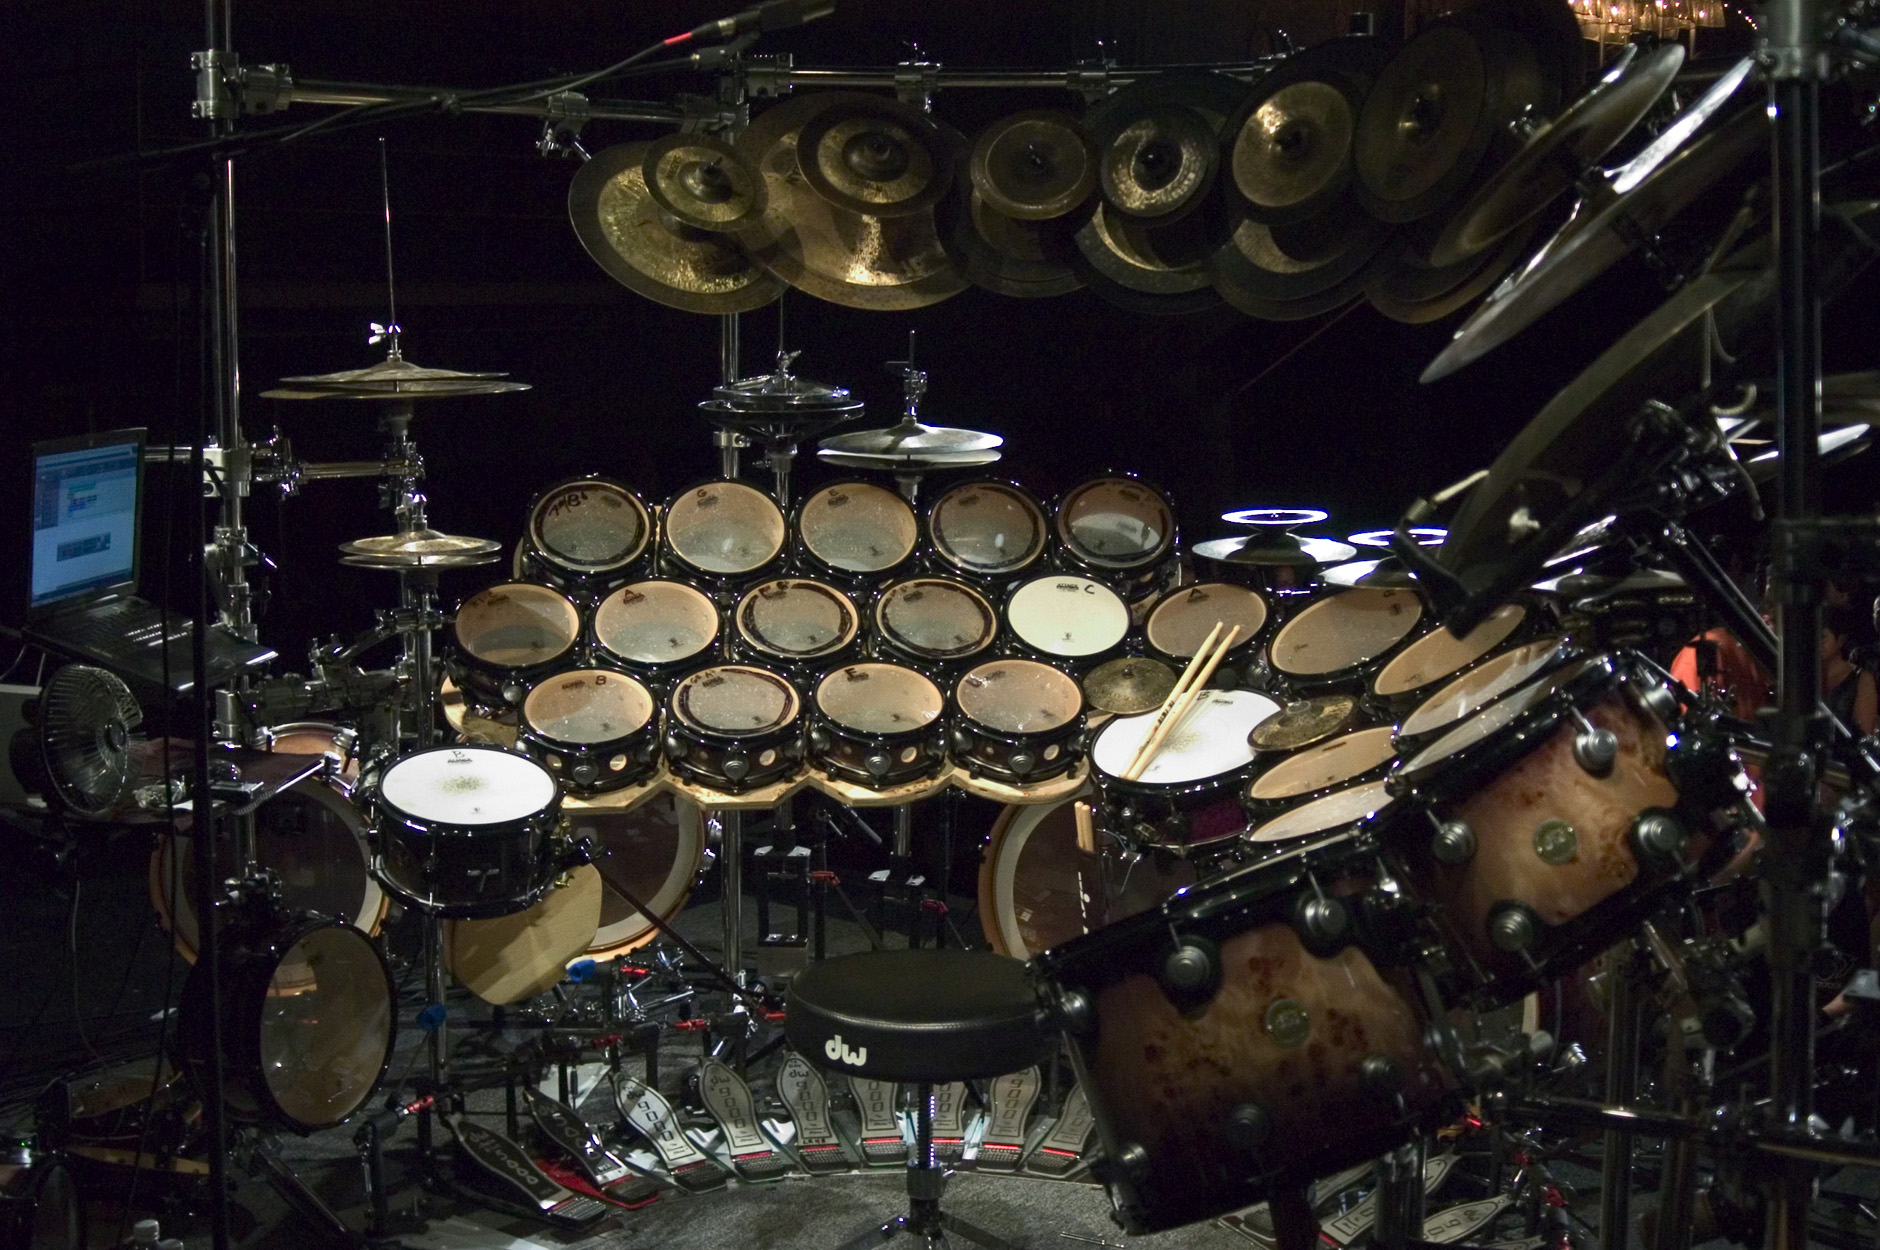 amazing drum kits